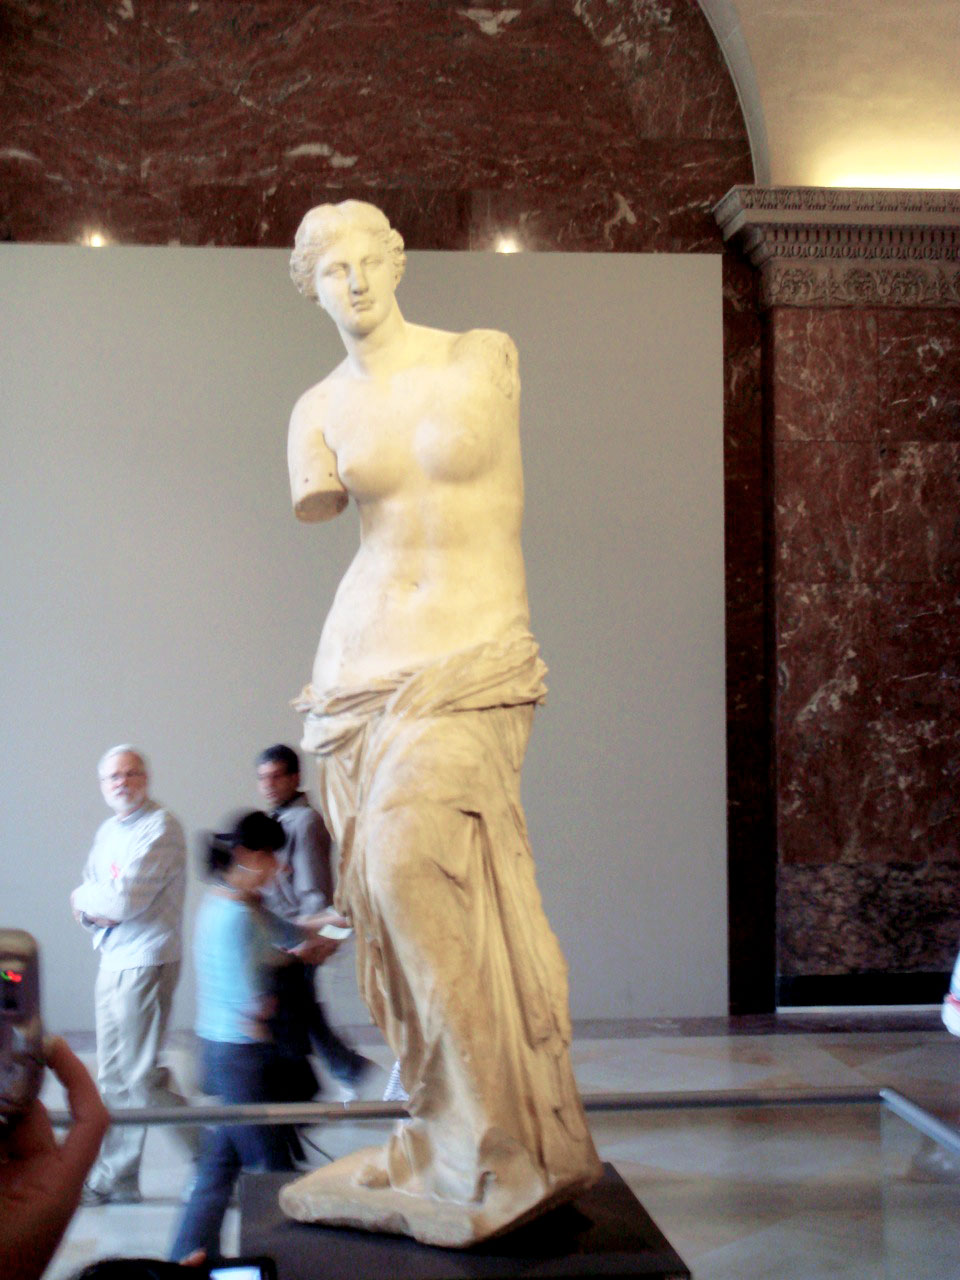 Venus de Milo statue. The Louvre, Paris, France. Photo taken on my first trip to paris in 2007.